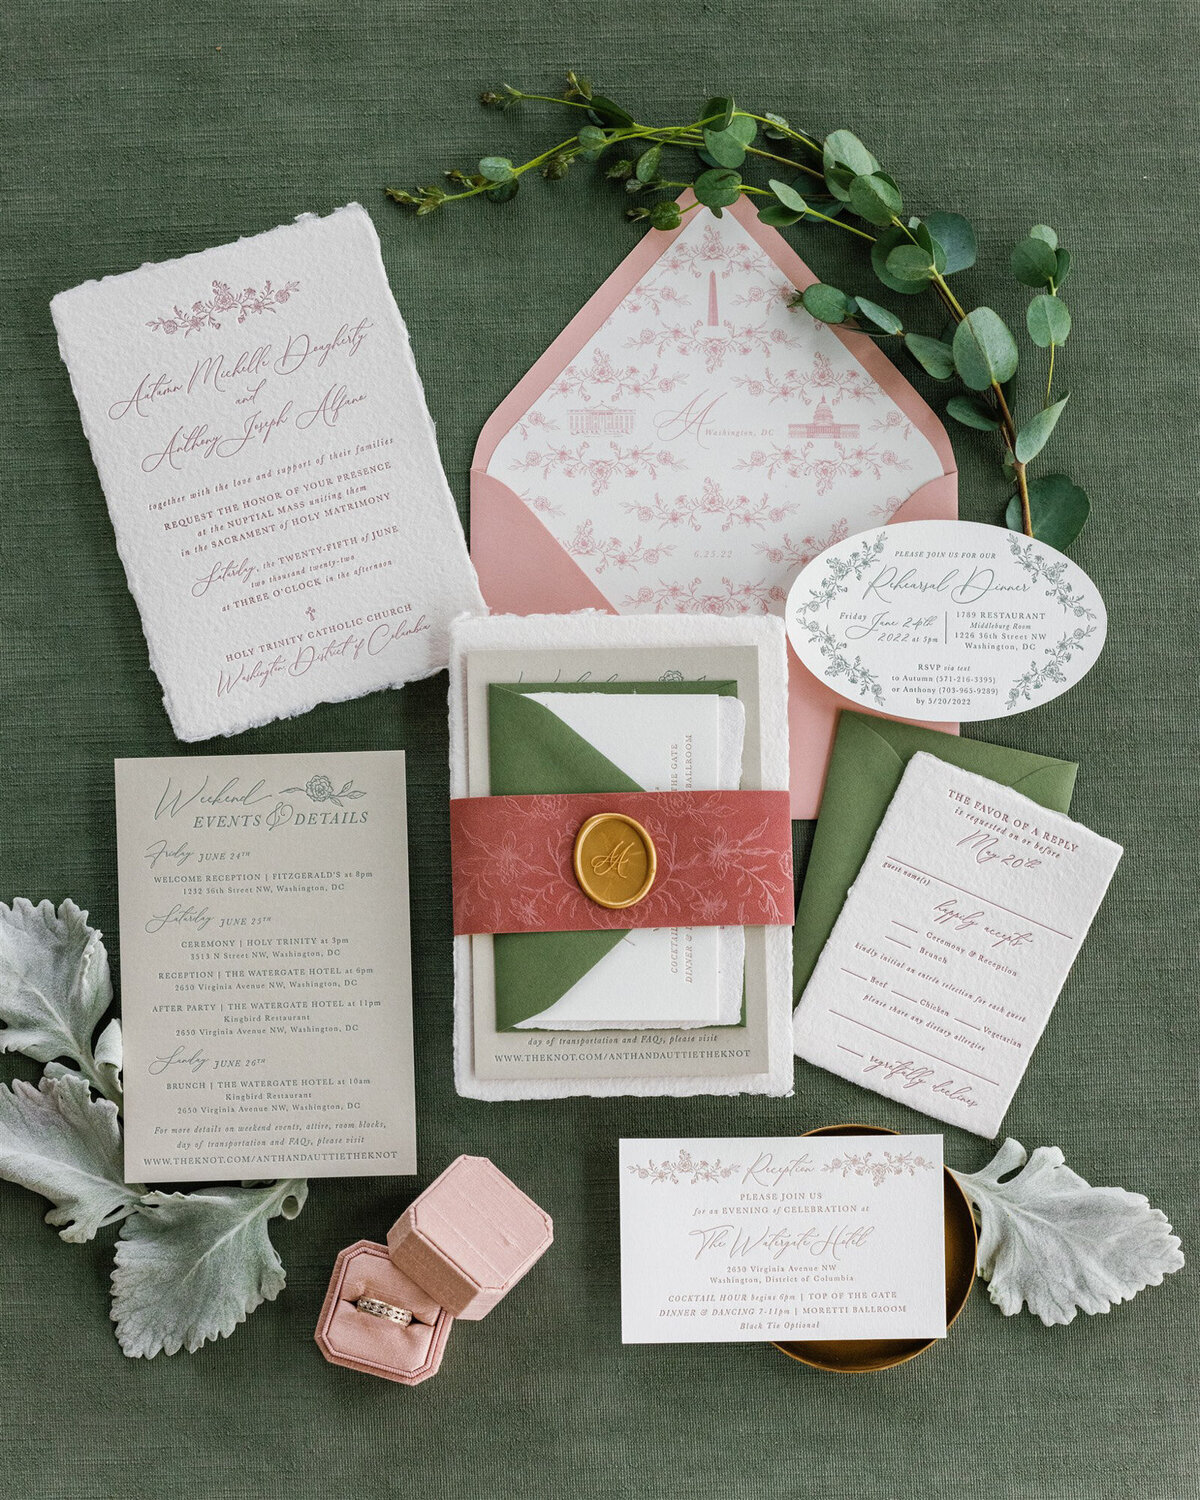 Elegant wedding details with invitation, menu, bands and floral details